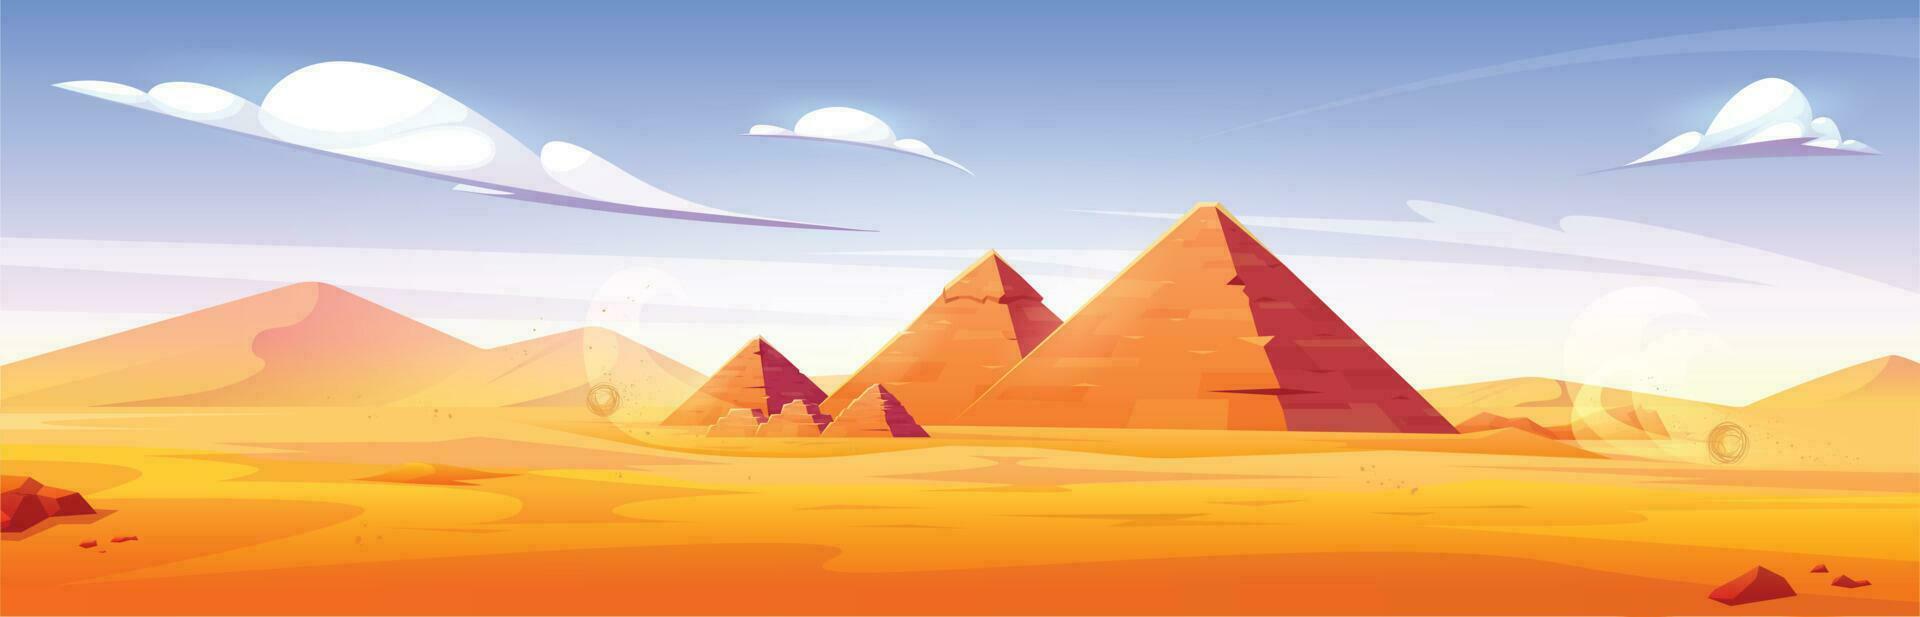 dessin animé sablonneux désert avec antique pyramides vecteur